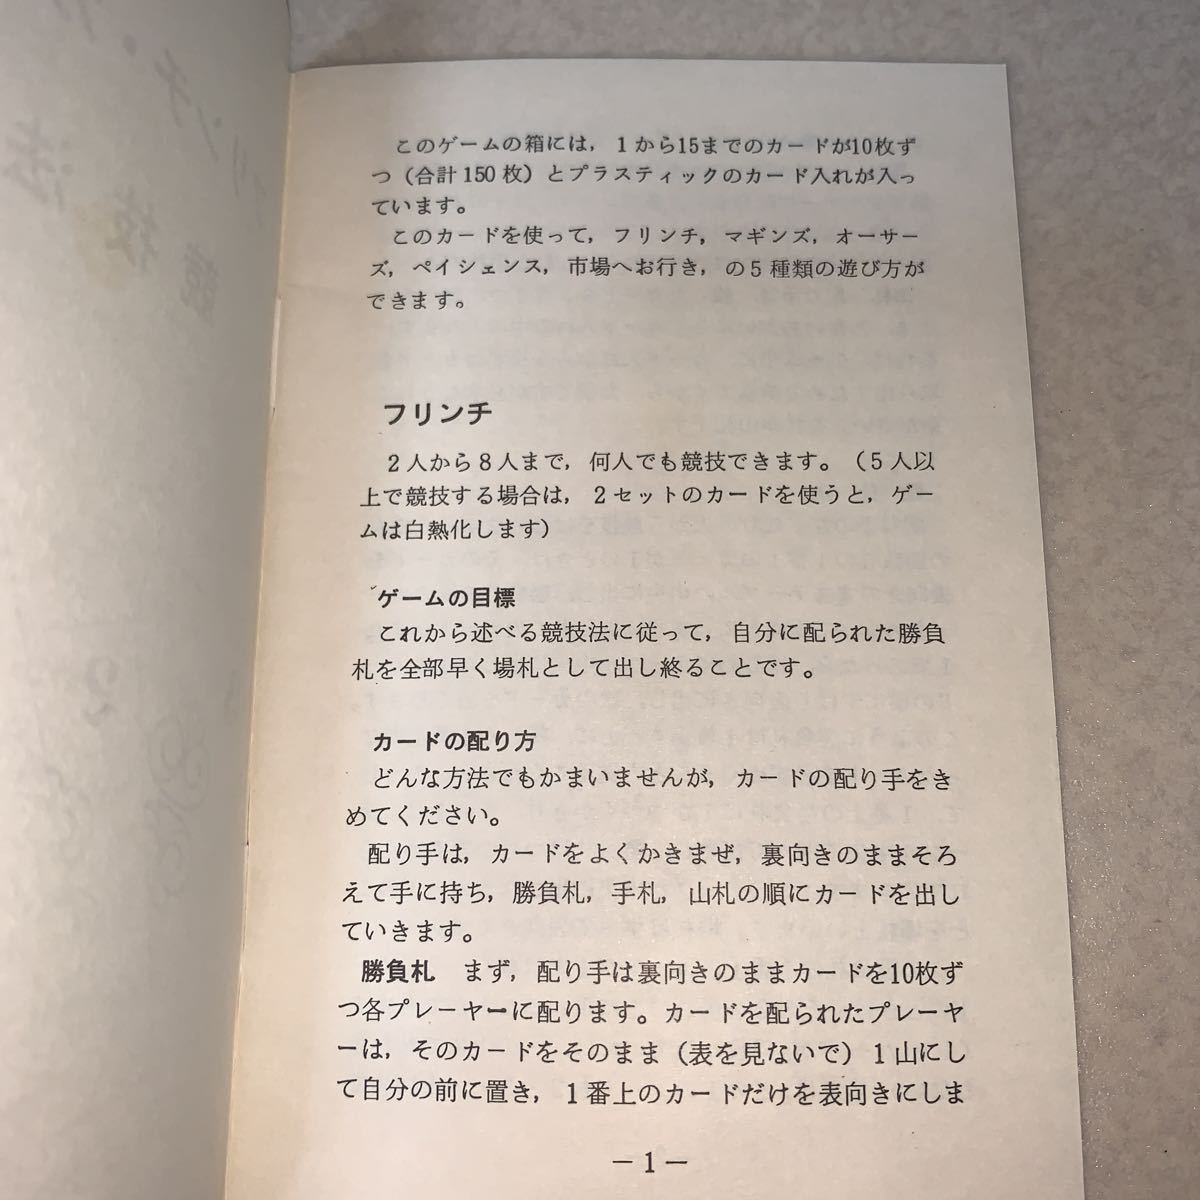  редкость! содержание нераспечатанный #FLINCH карты японский язык перевод есть #